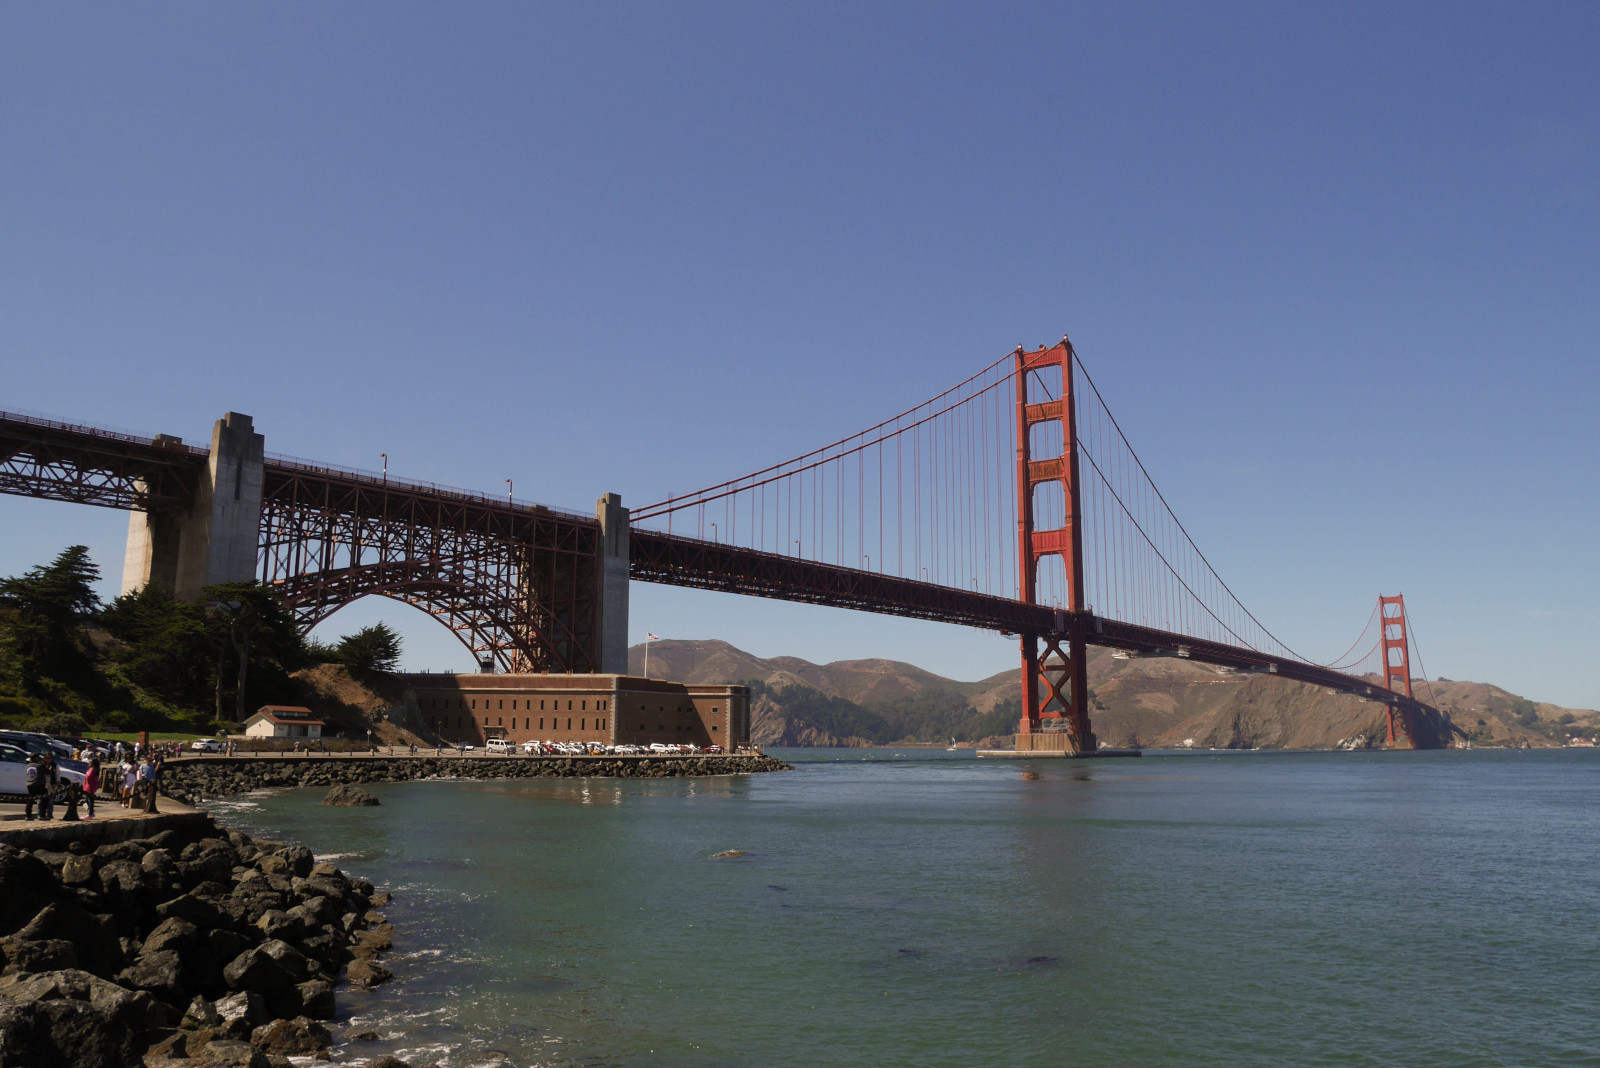 Fort Point under Golden Gate Bridge